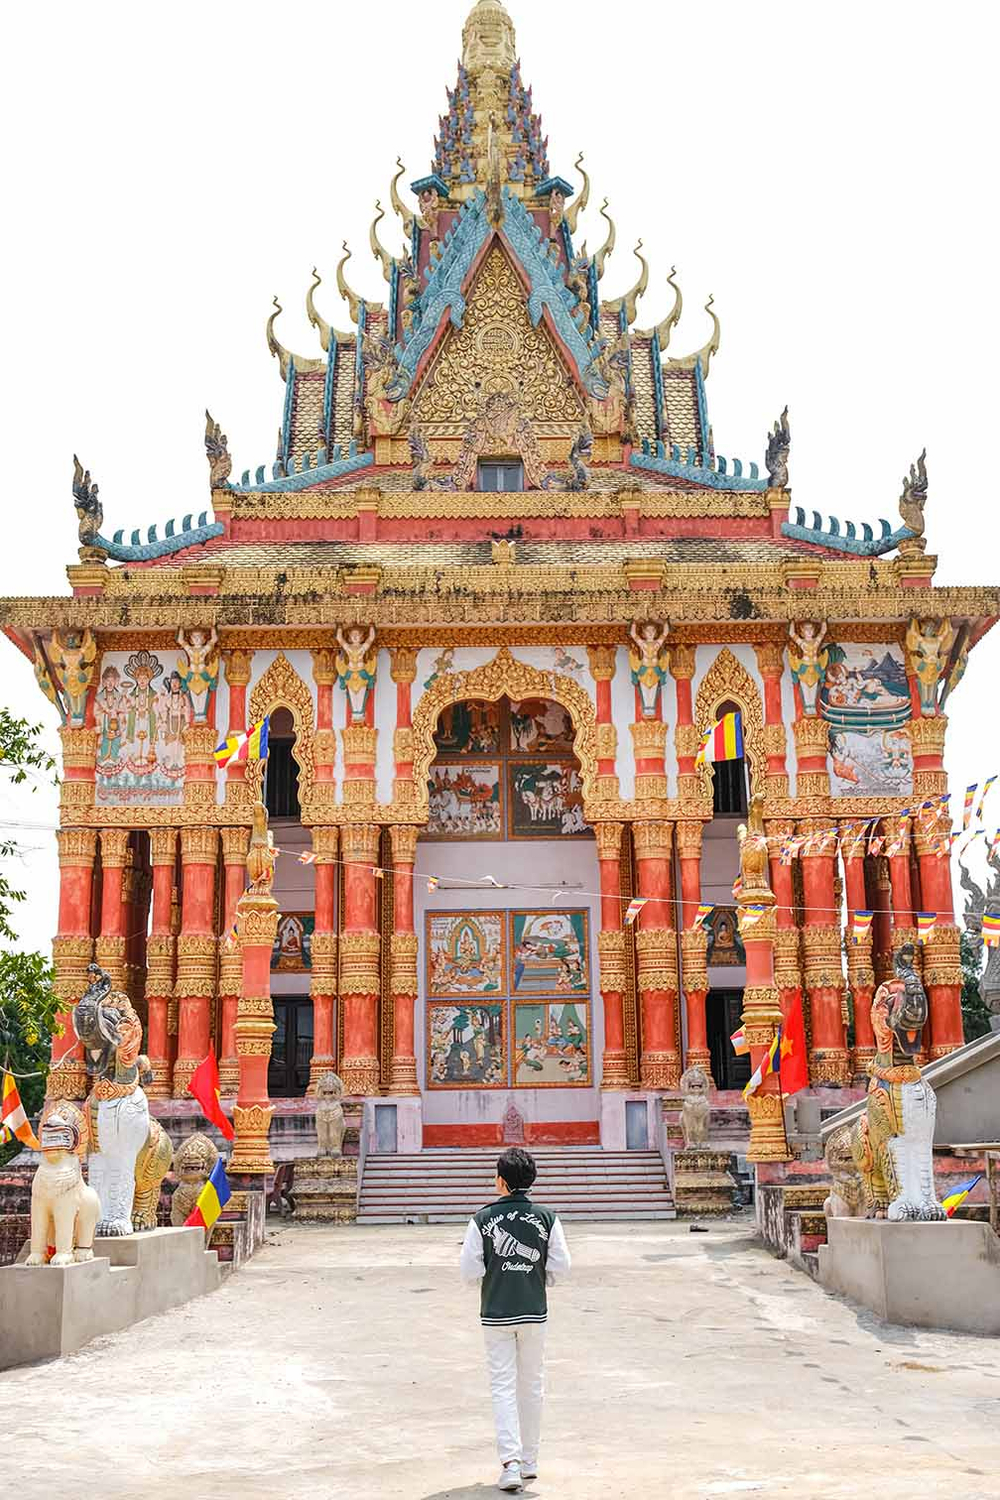 Chùa Ghositaram như một điểm son trong văn hóa tín ngưỡng Phật giáo và là một trong những ngôi chùa Khmer có không gian, kiến trúc đẹp bậc nhất của khu vực đồng bằng sông Cửu Long.